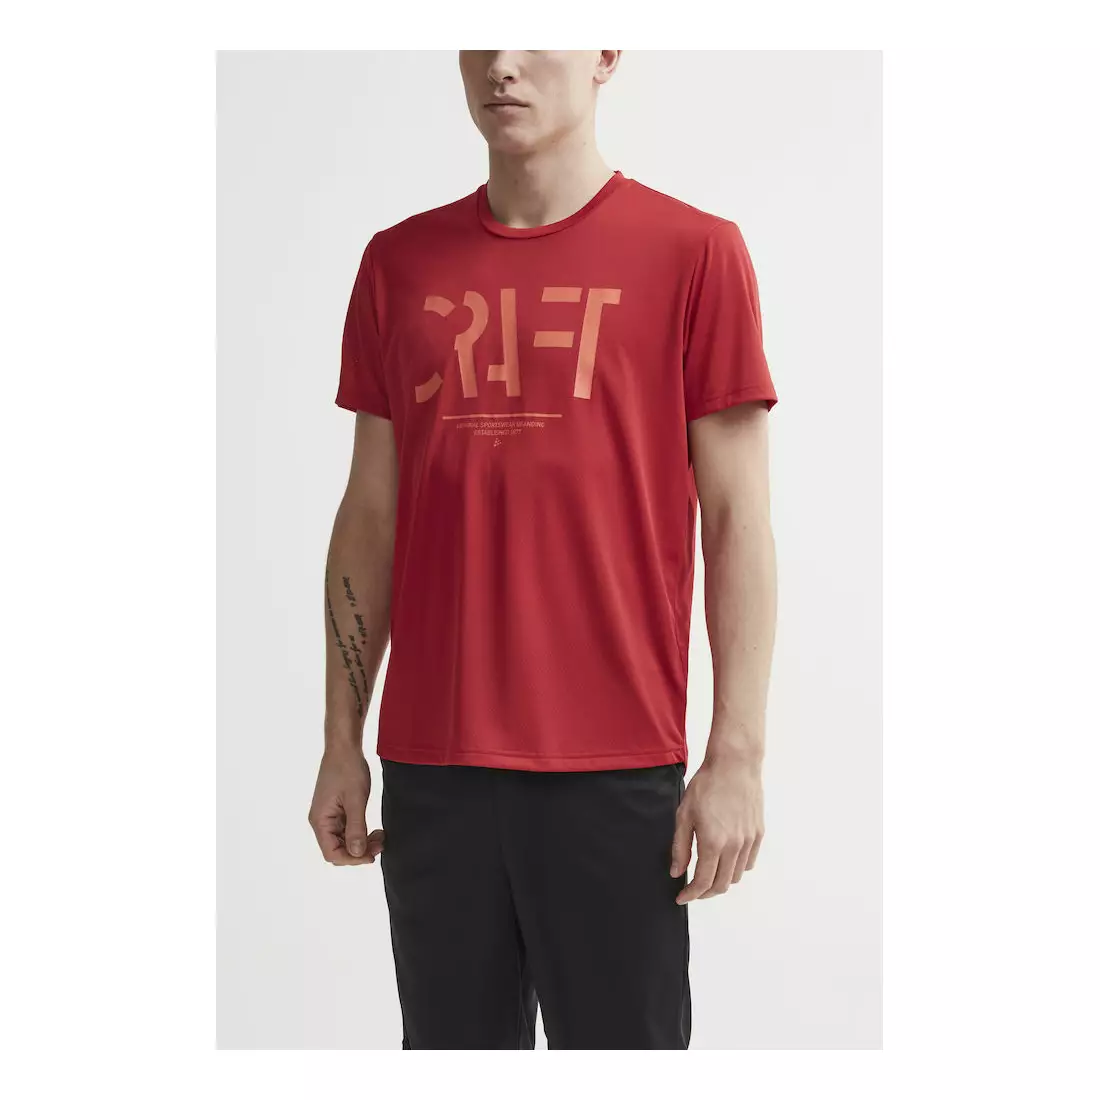 Tricou sport / alergare pentru bărbați CRAFT EAZE MESH roșu 1907018-432000